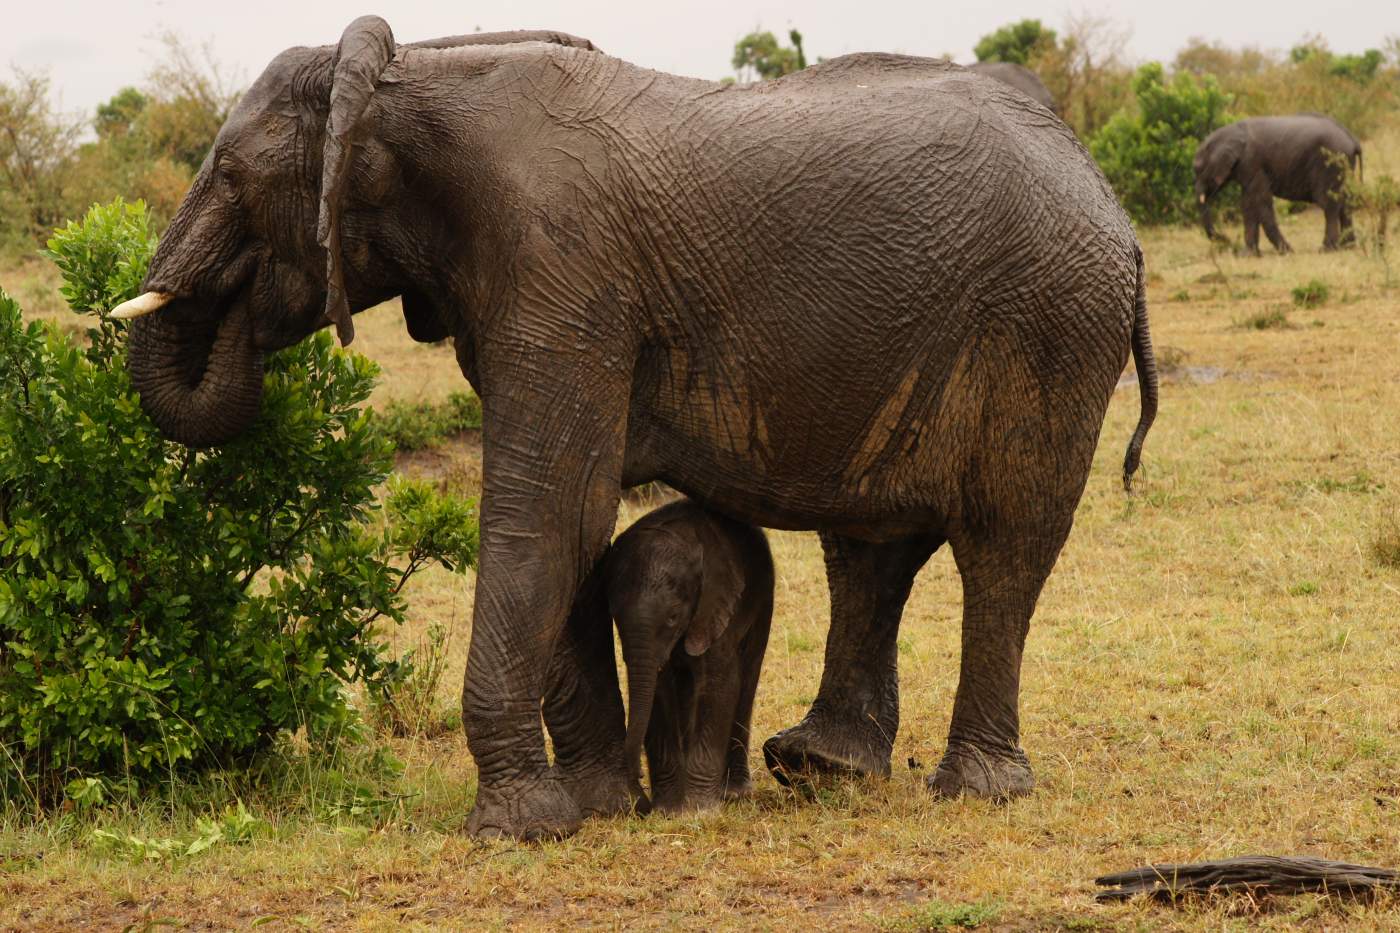 Elefanten Mutter und ihr Junges beim Mittagessen auf Safari Reise durch Afrika